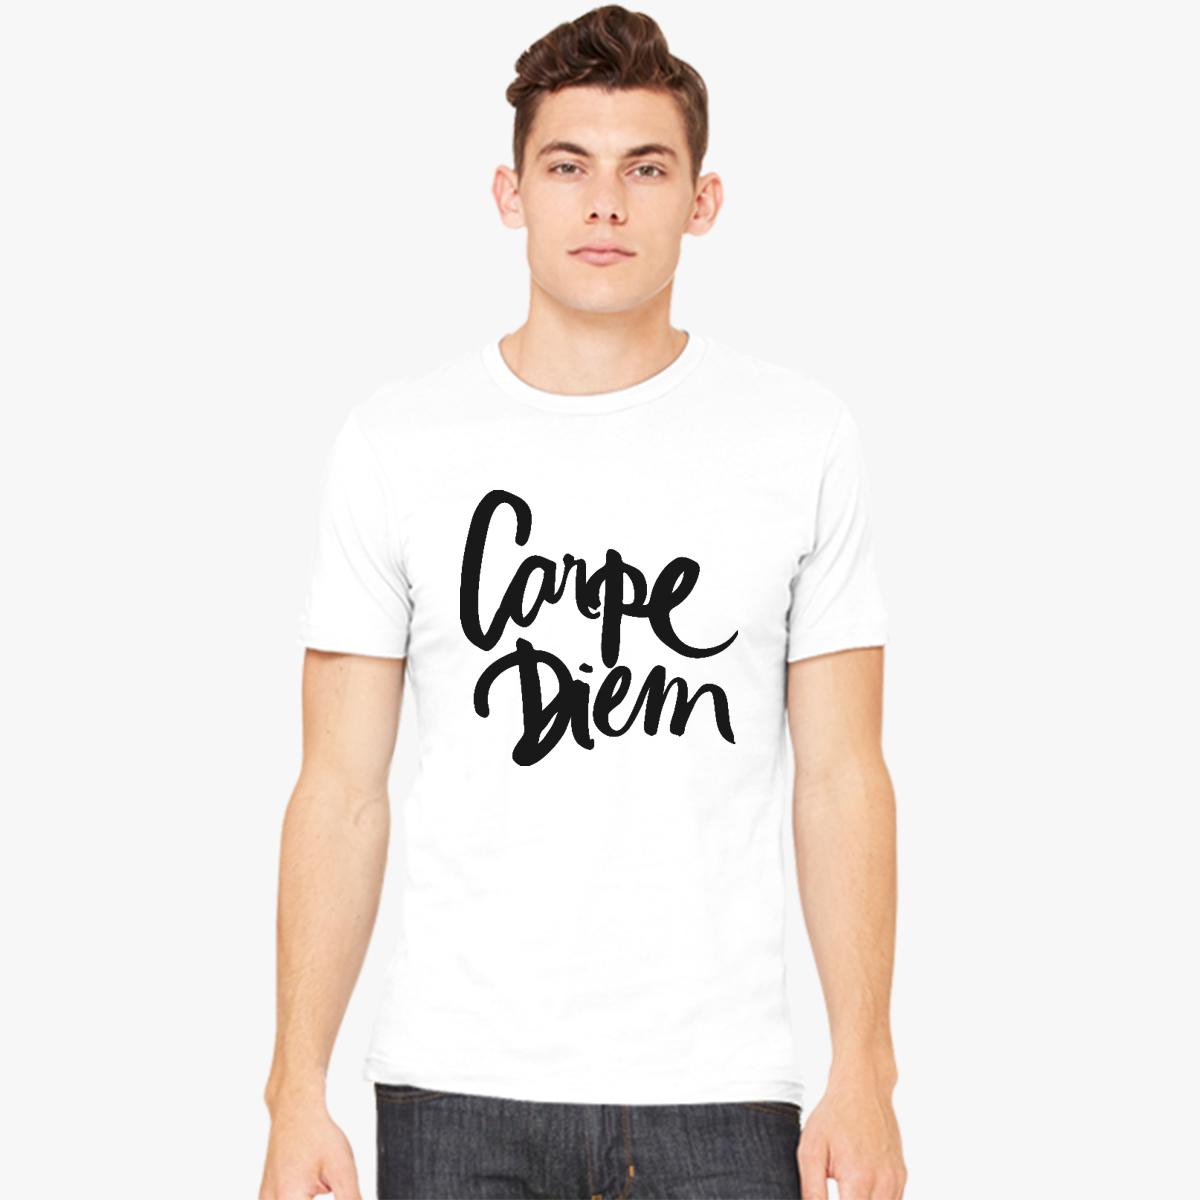 Carpe diem Men's T-shirt